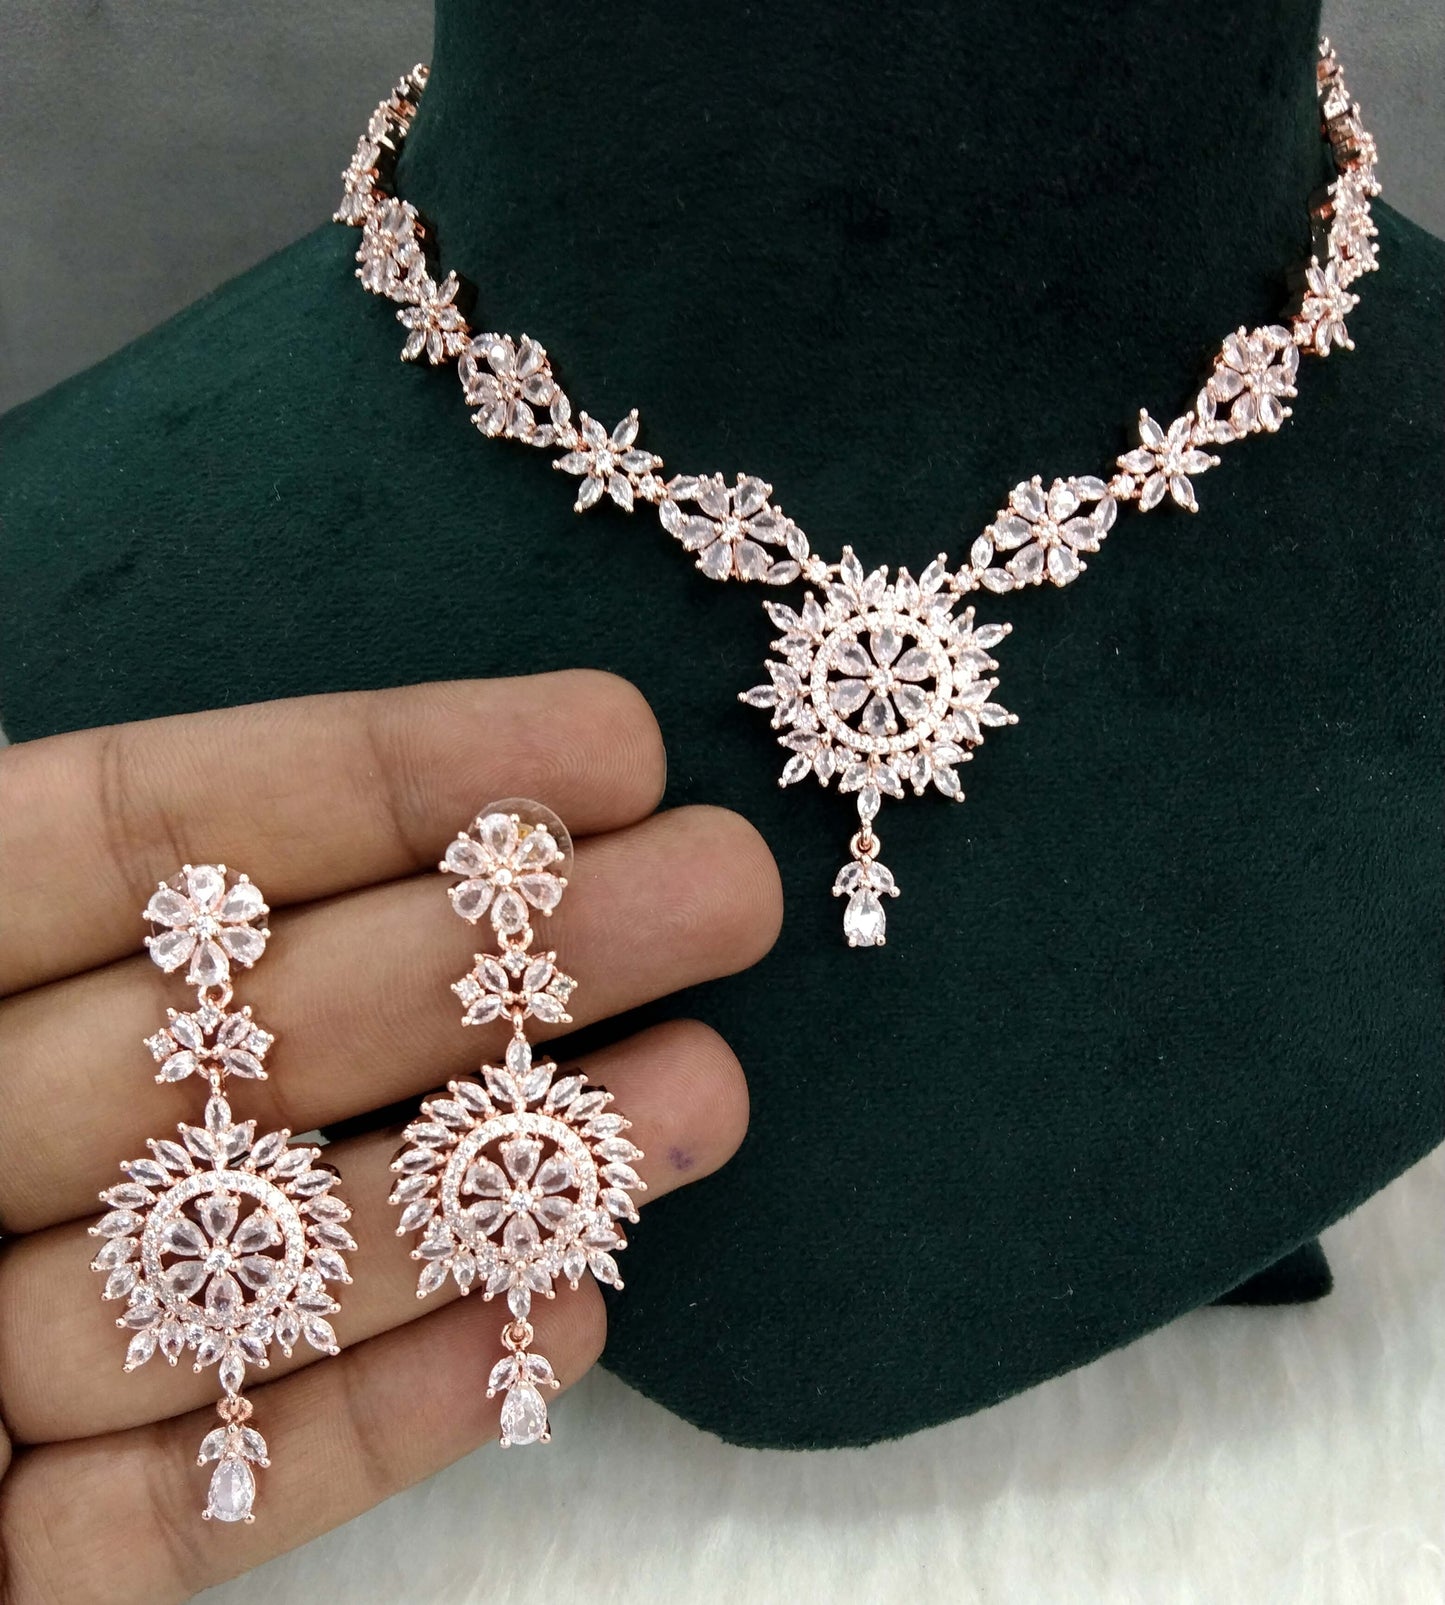 Cubic zirconia diamond necklace set, Rose gold necklace set CZ out necklace set